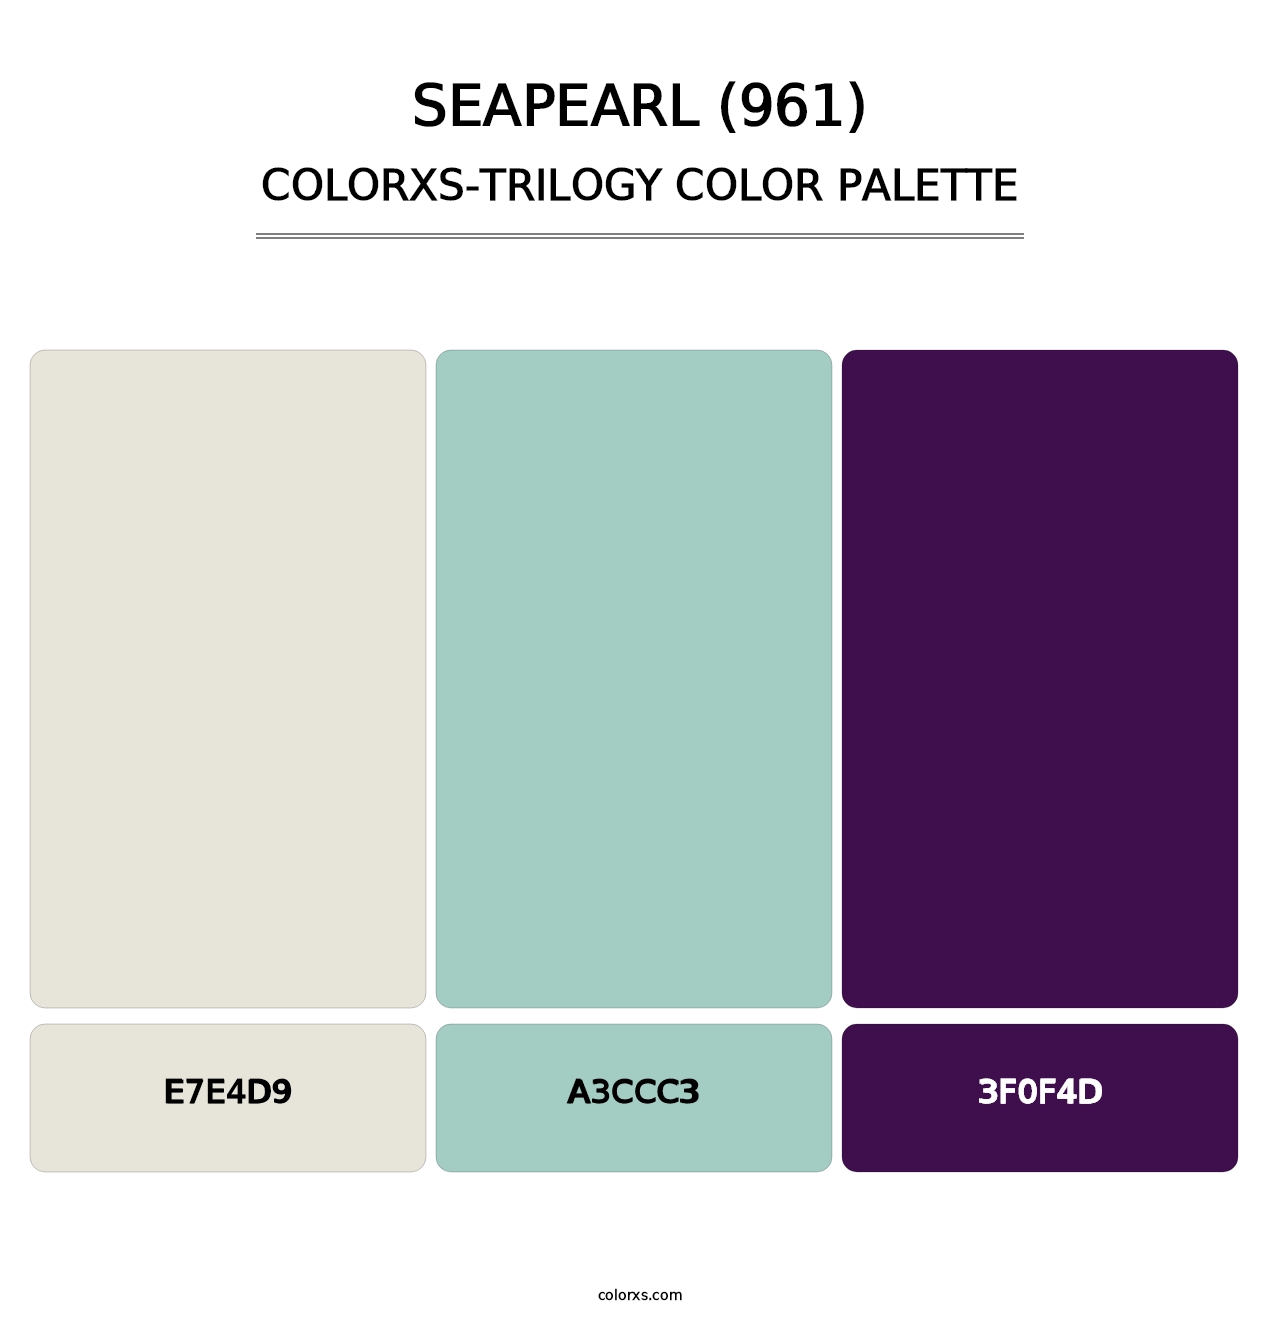 Seapearl (961) - Colorxs Trilogy Palette